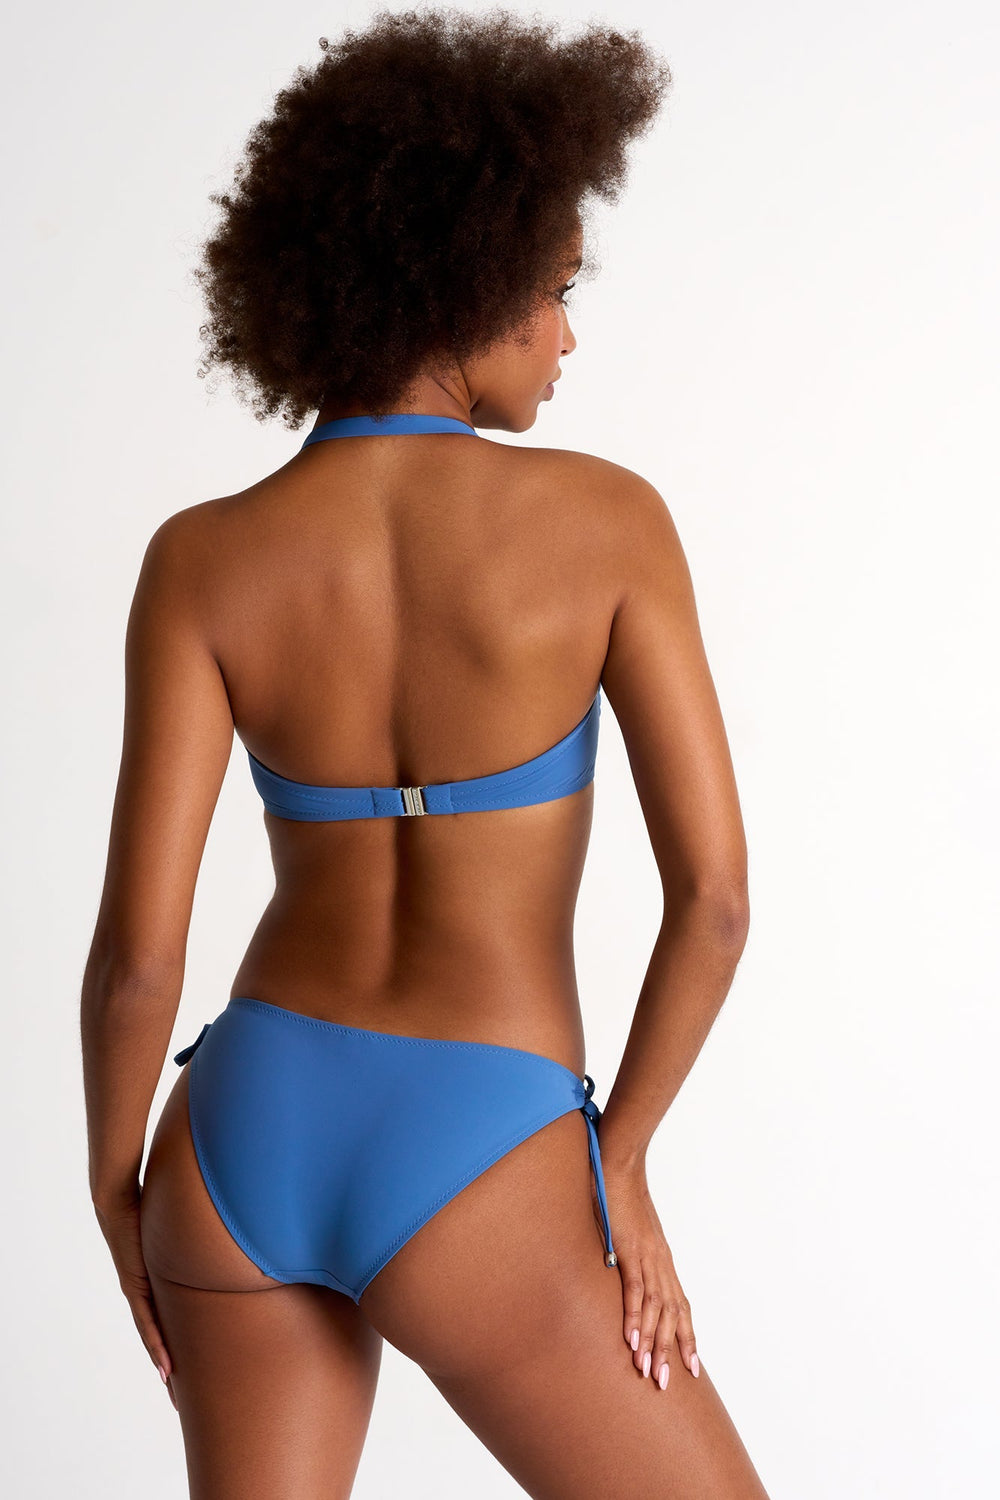 Bikini Bottom - 42460-31-510 4 / 510 French Blue / 75% POLYAMIDE, 25% ELASTANE